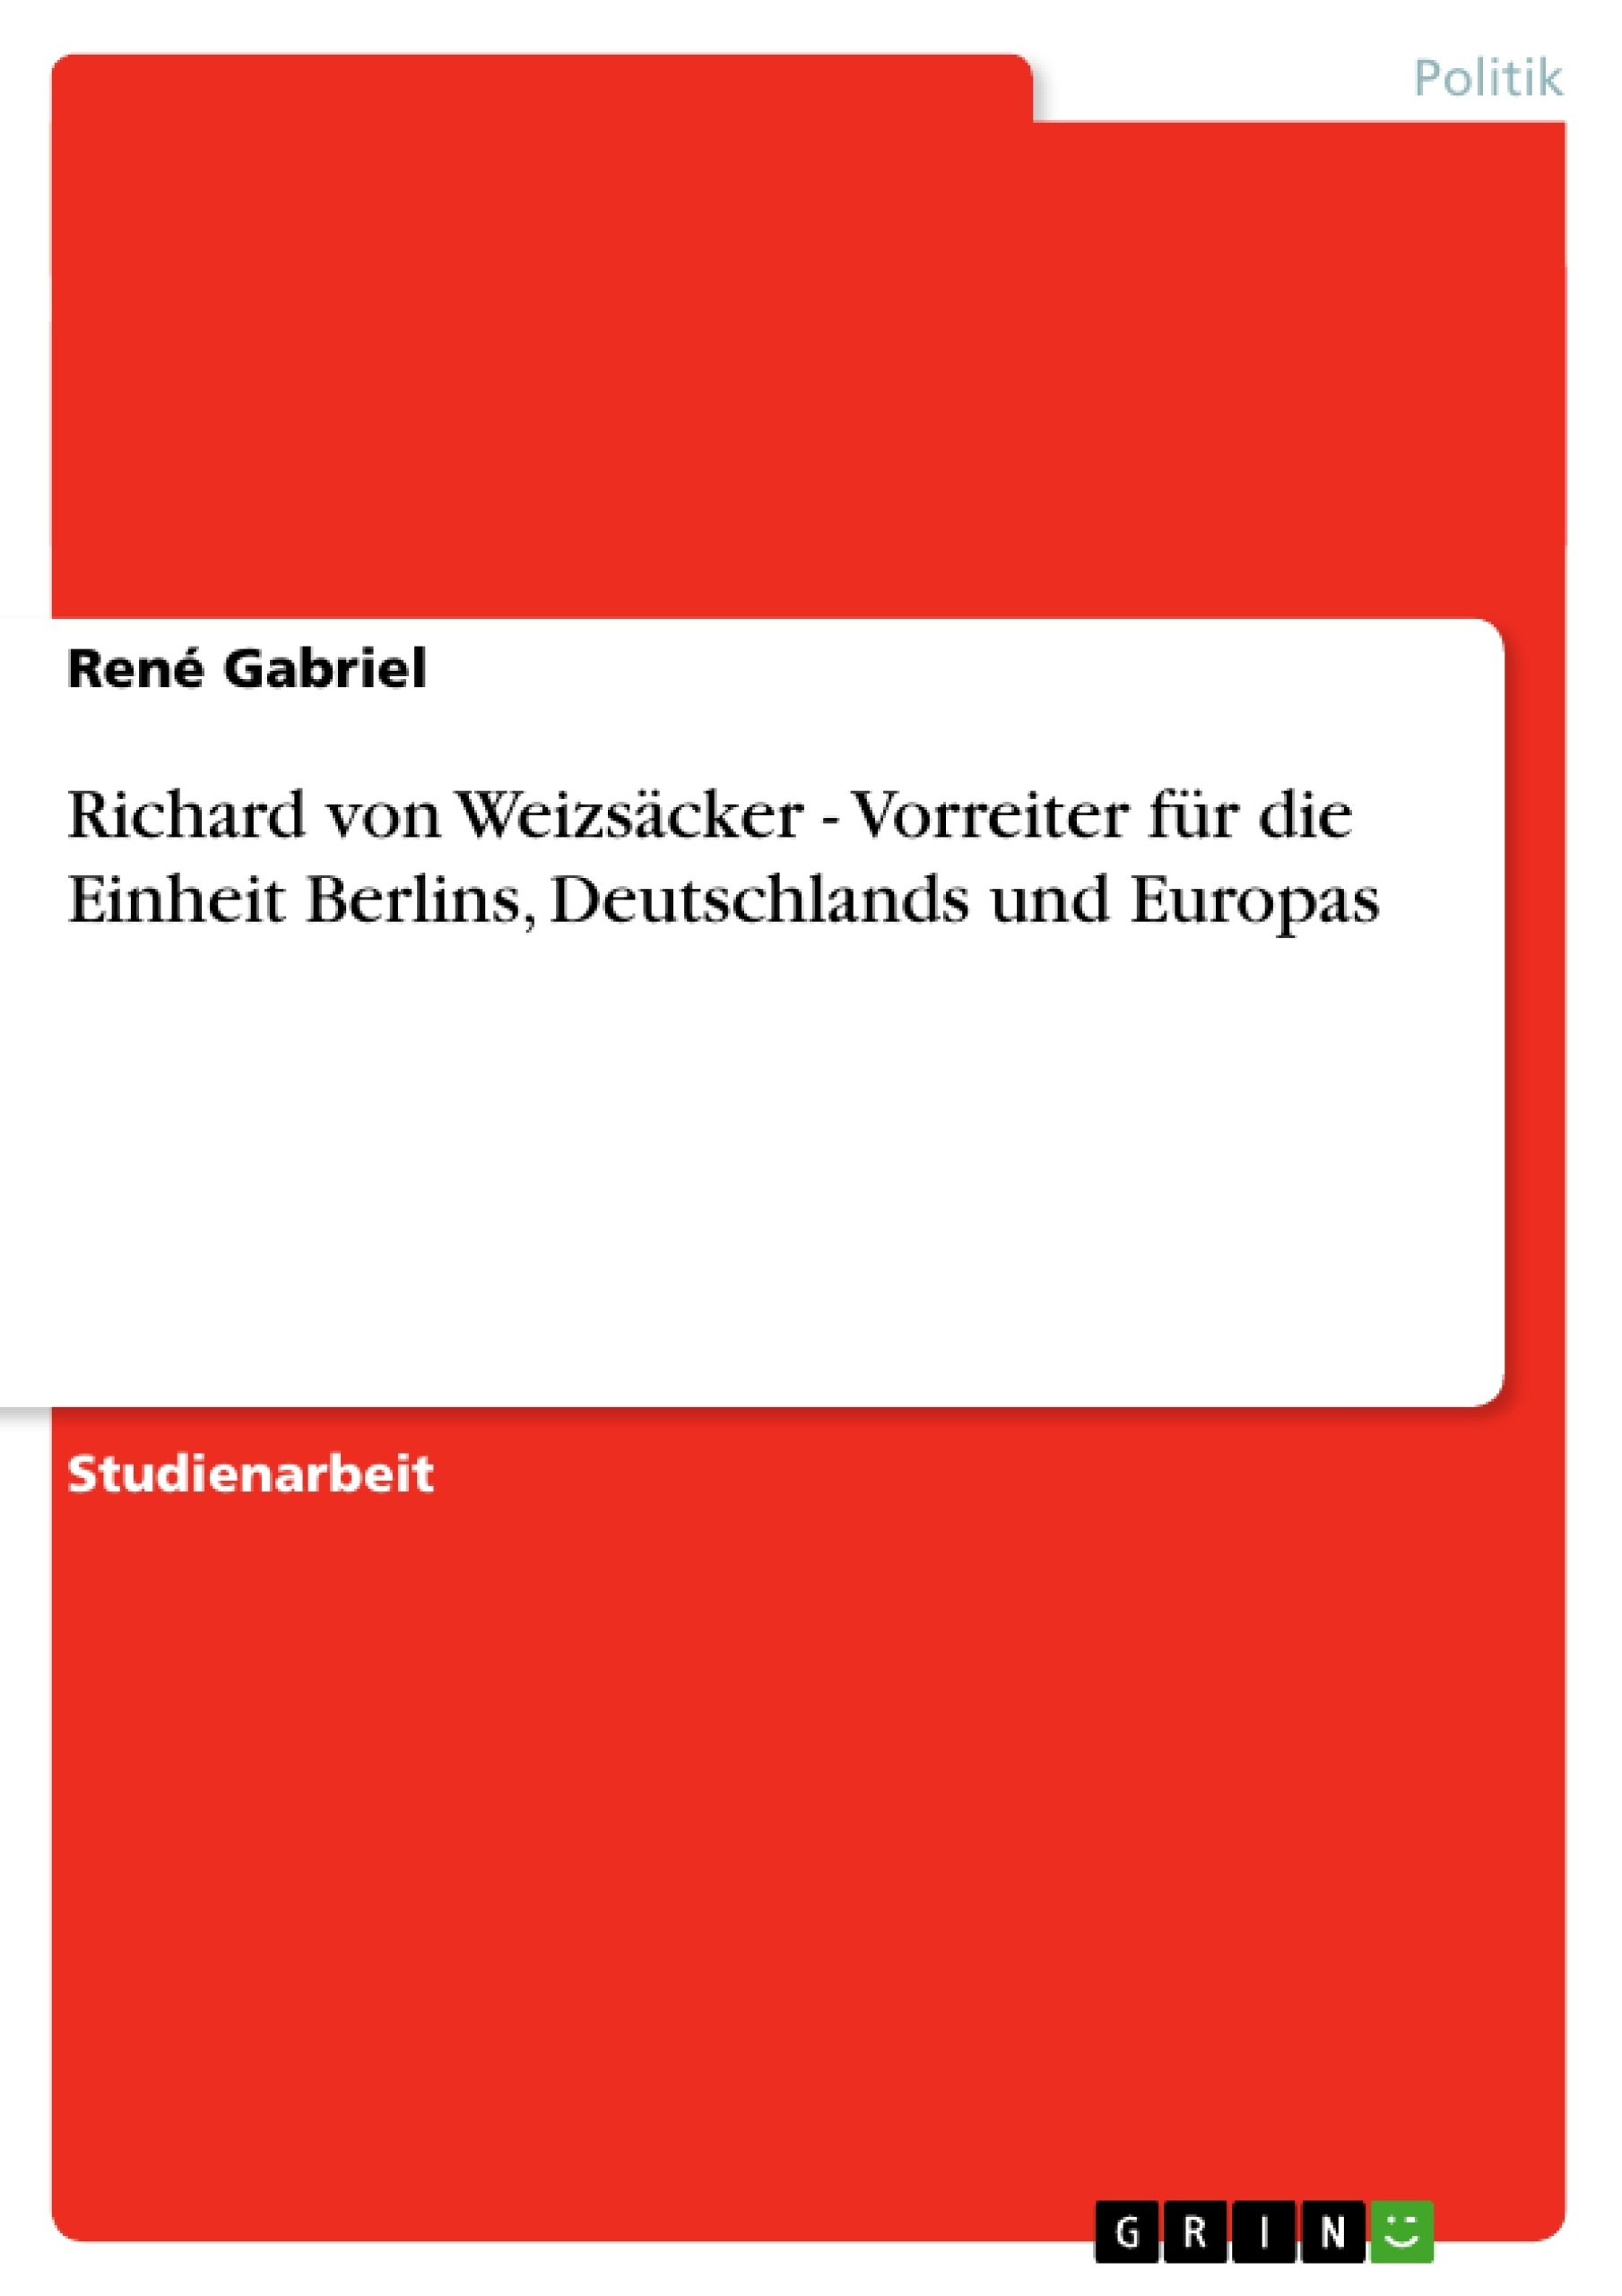 Title: Richard von Weizsäcker - Vorreiter für die Einheit Berlins, Deutschlands und Europas